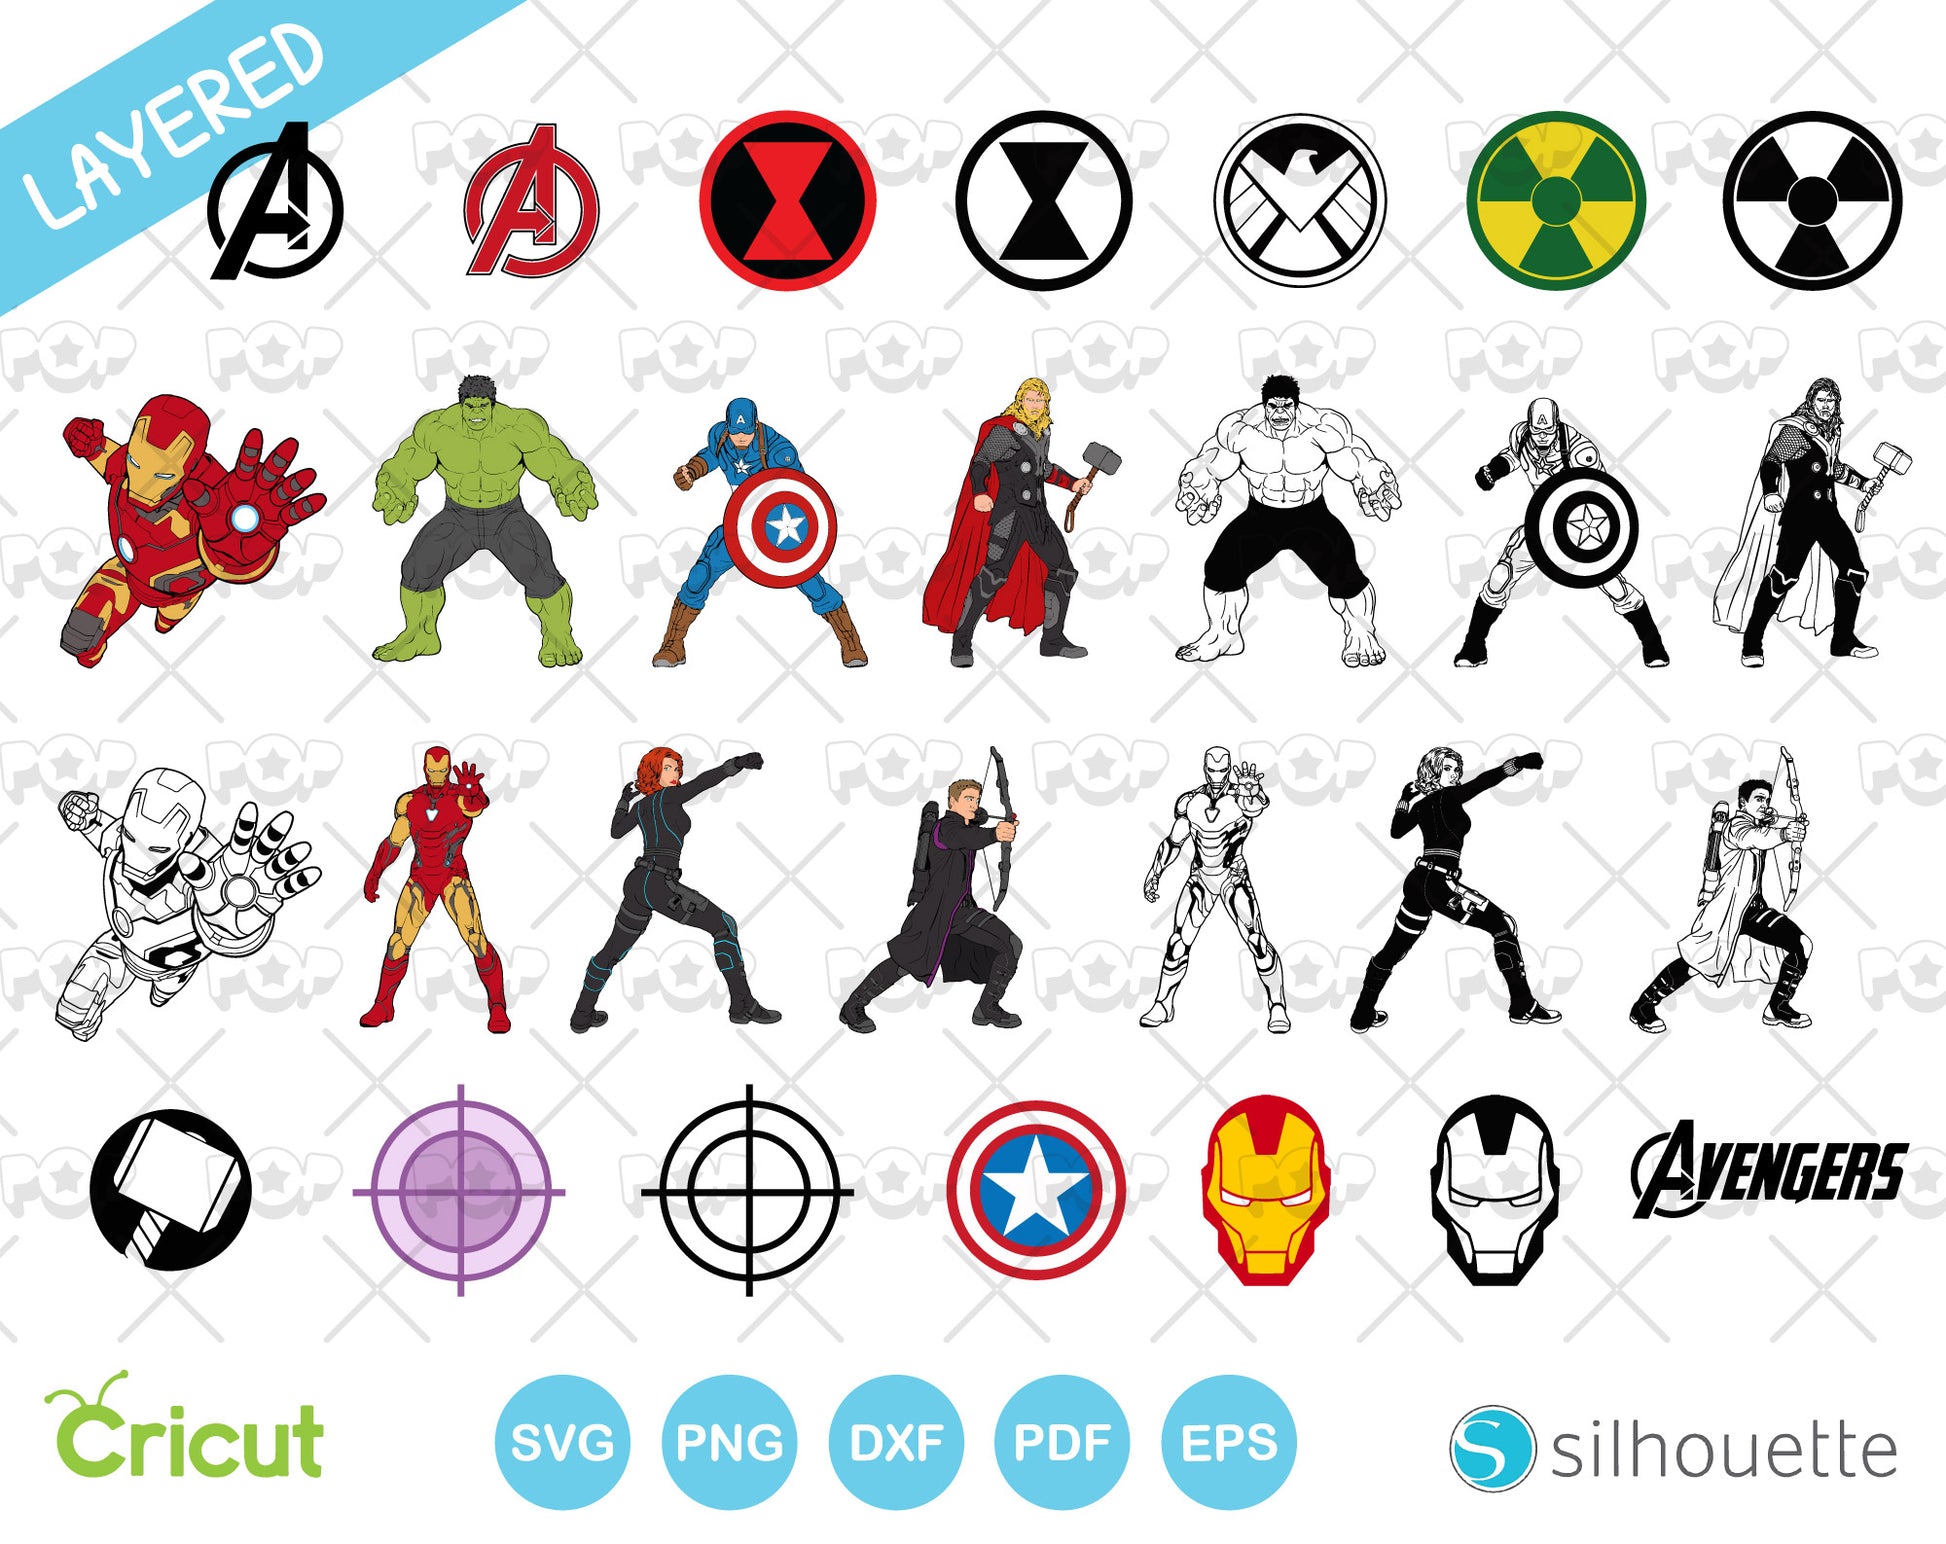 Marvel Avengers clipart bundle, Avengers SVG cut files for Cricut ...